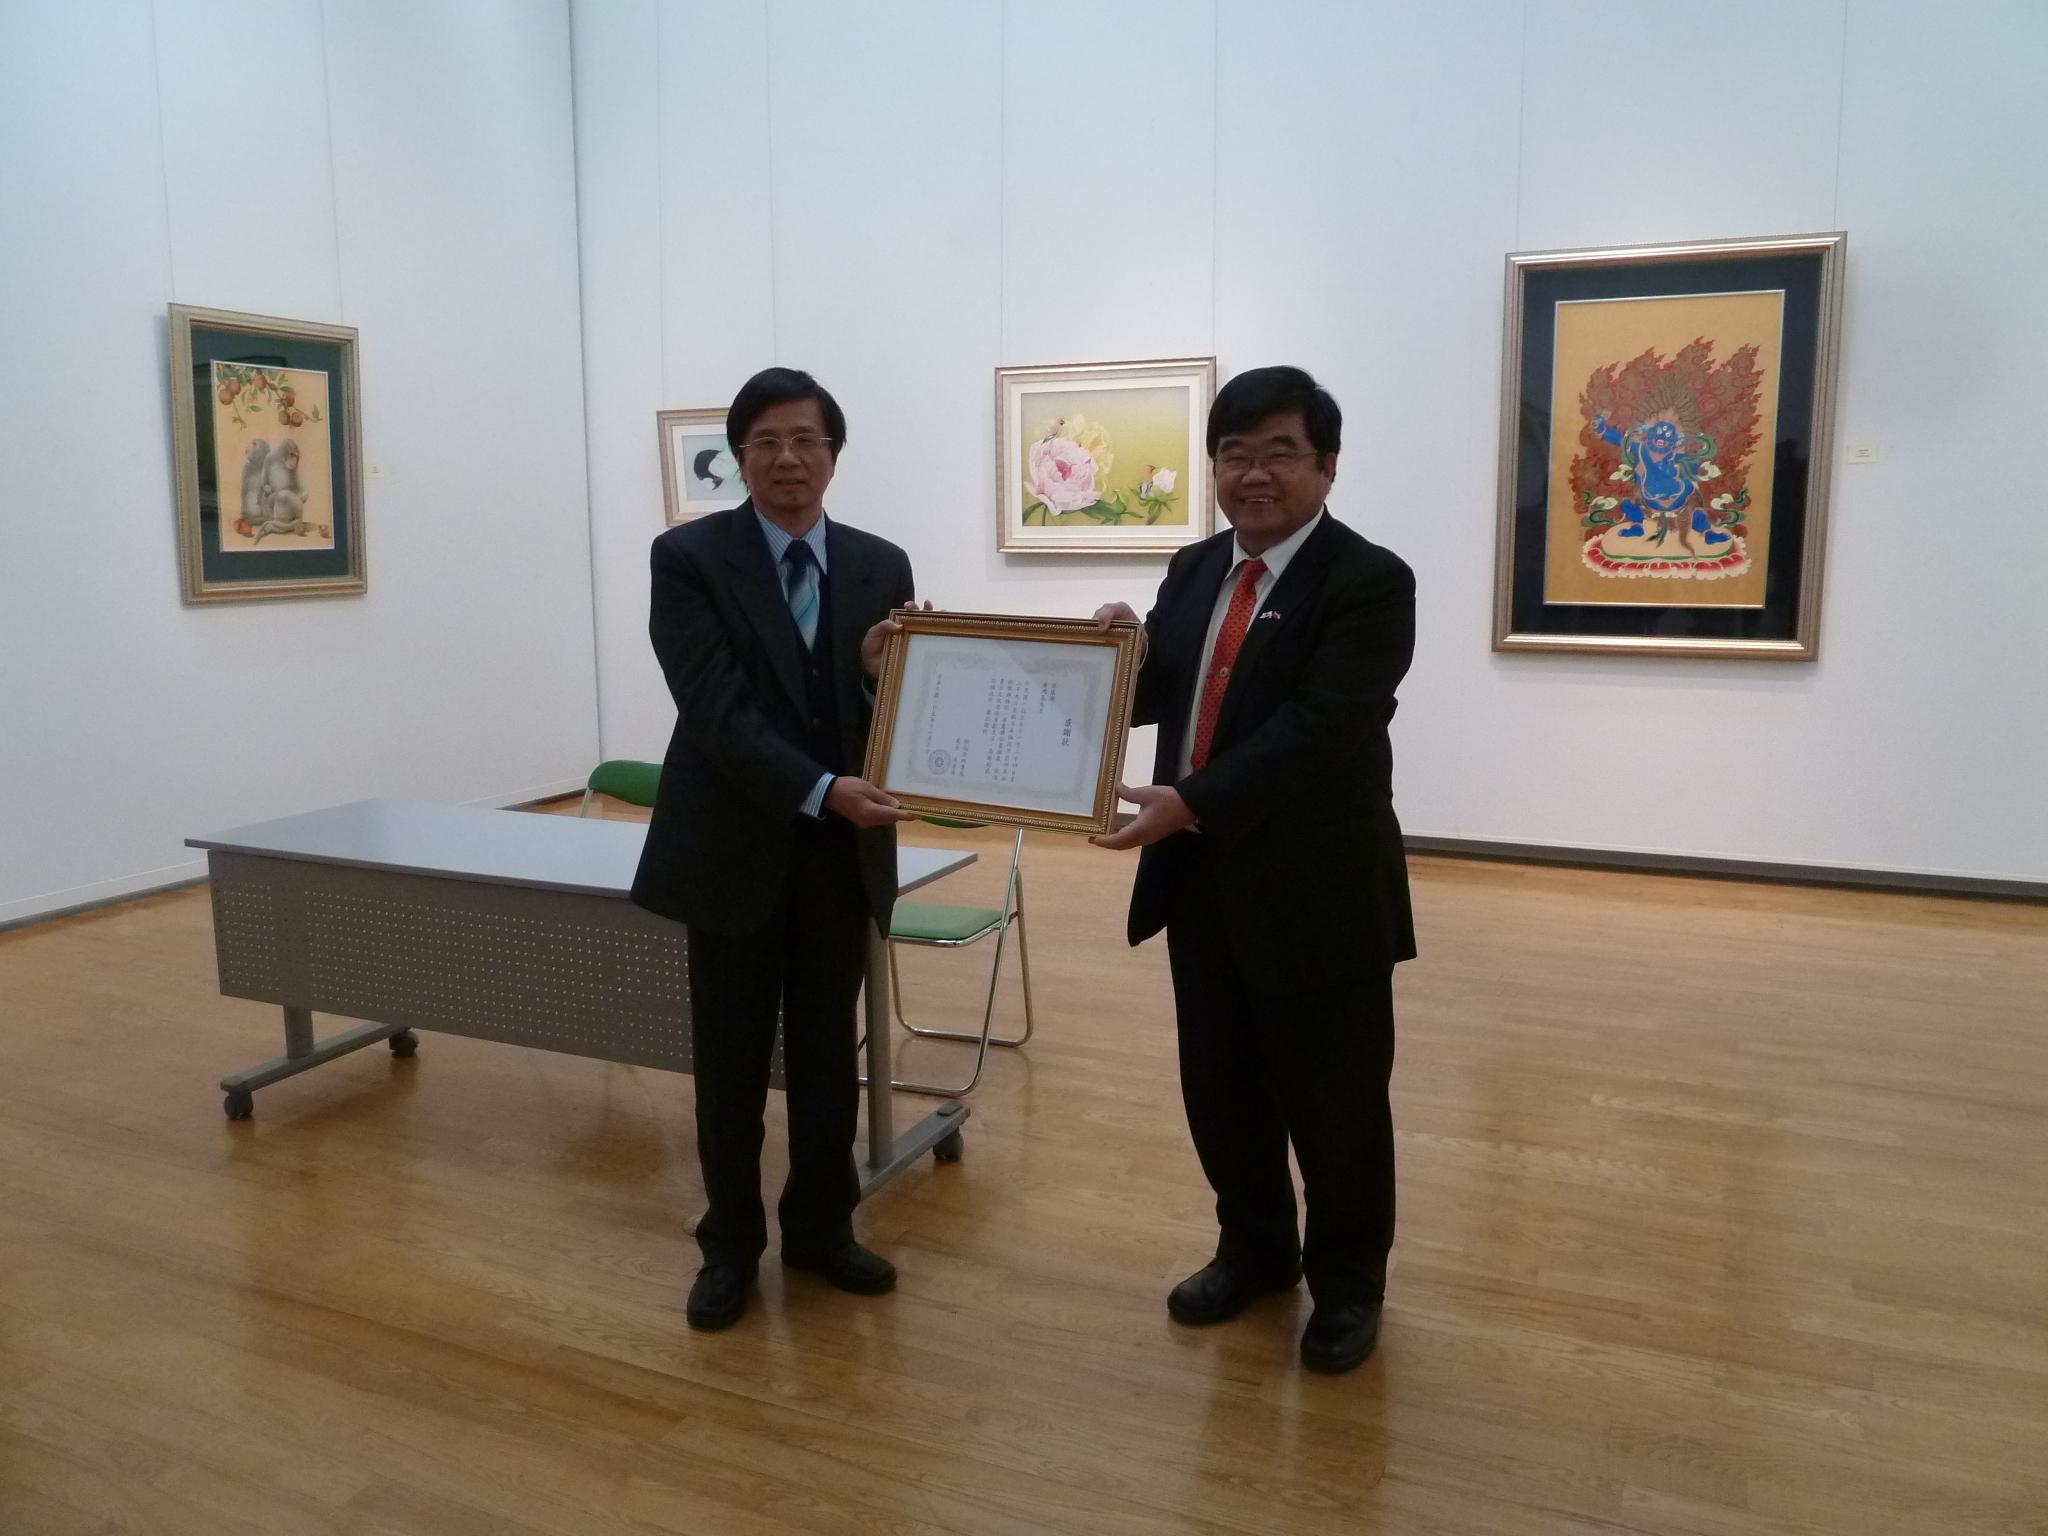 戎総領事が台湾膠彩画画家黃鴻基に感謝状を贈呈した